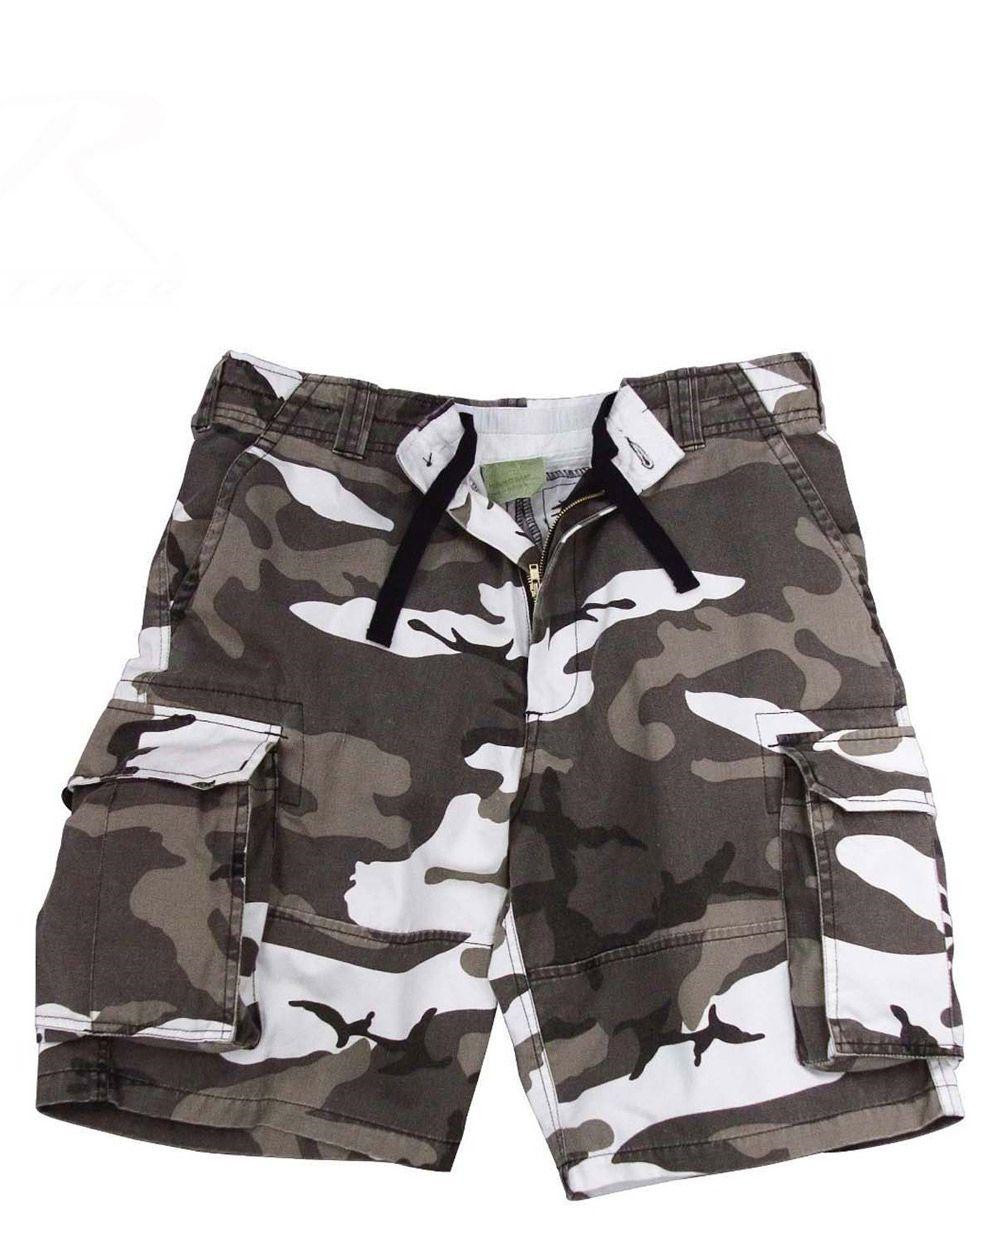 Rothco Cargo shorts (Urban Camo, M)